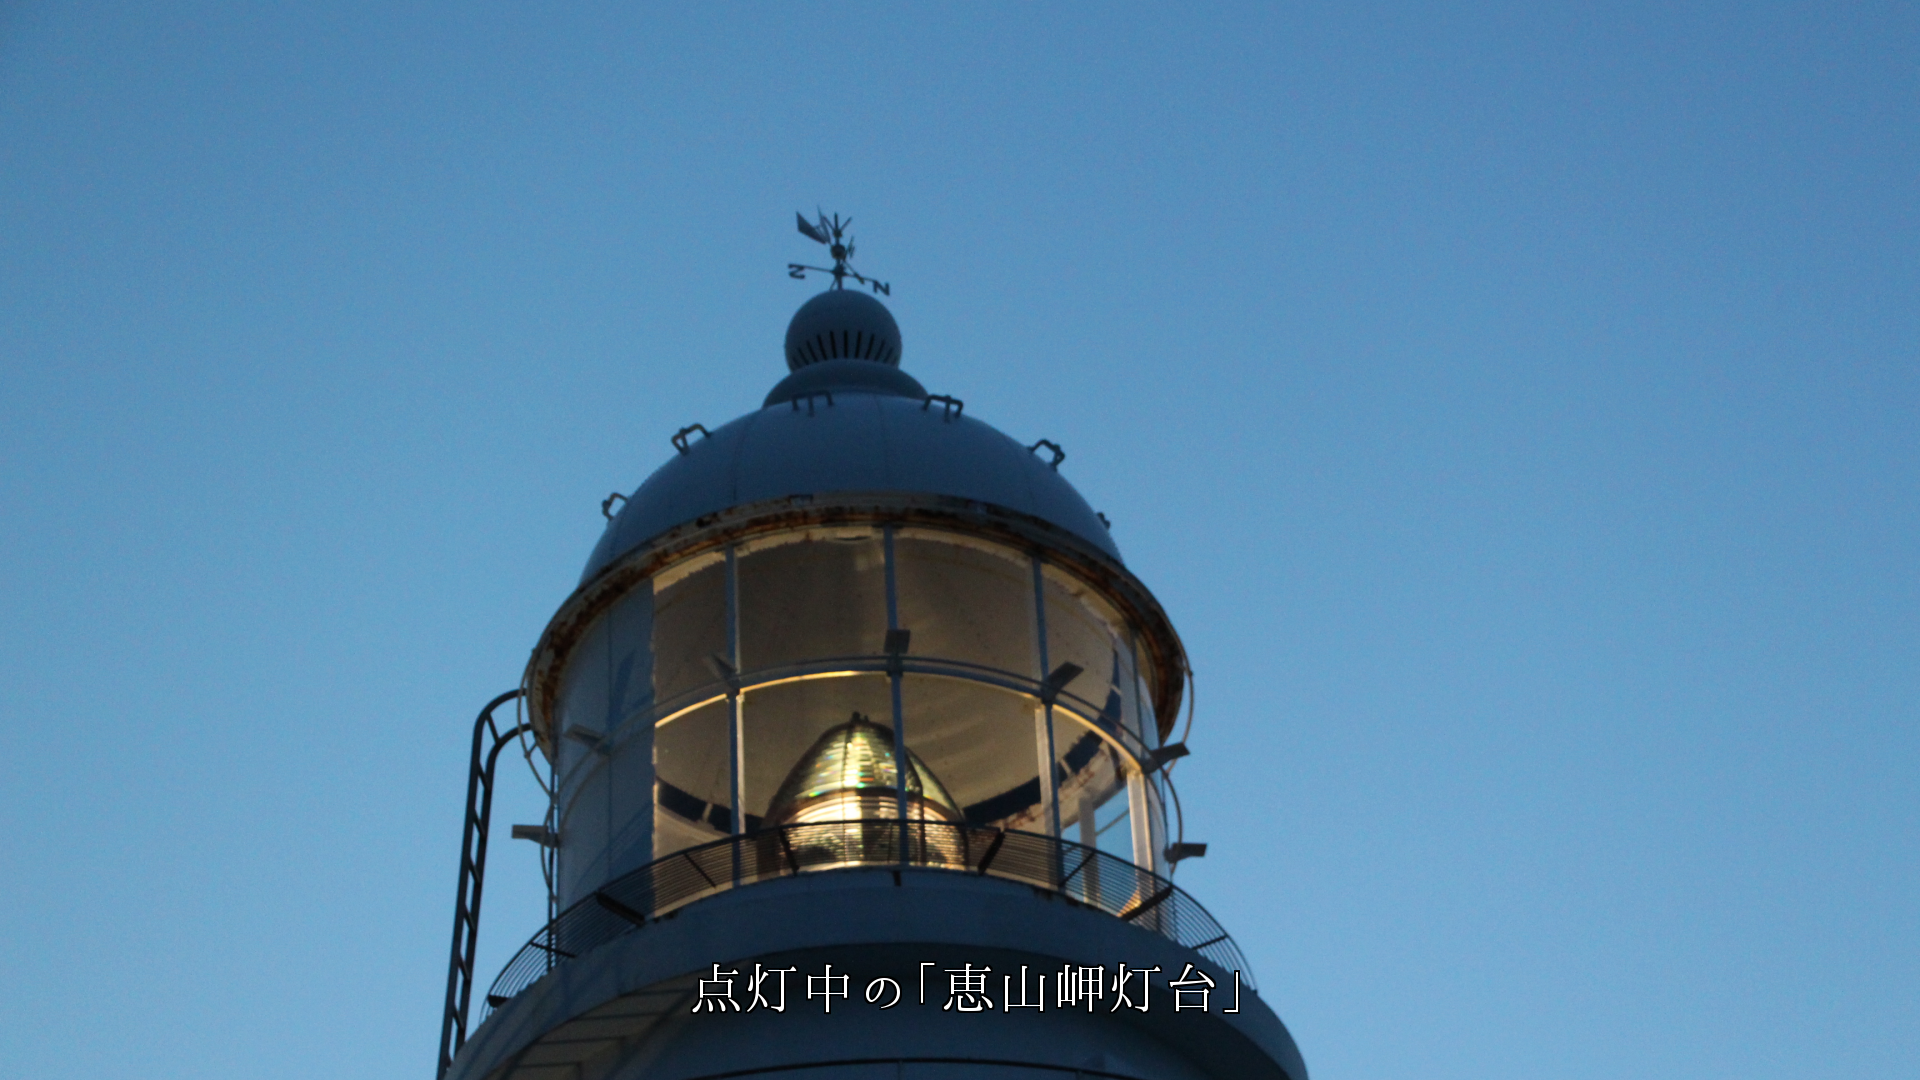 夕方の点灯した岬の灯台　これから船を見守るんだね　有難う

